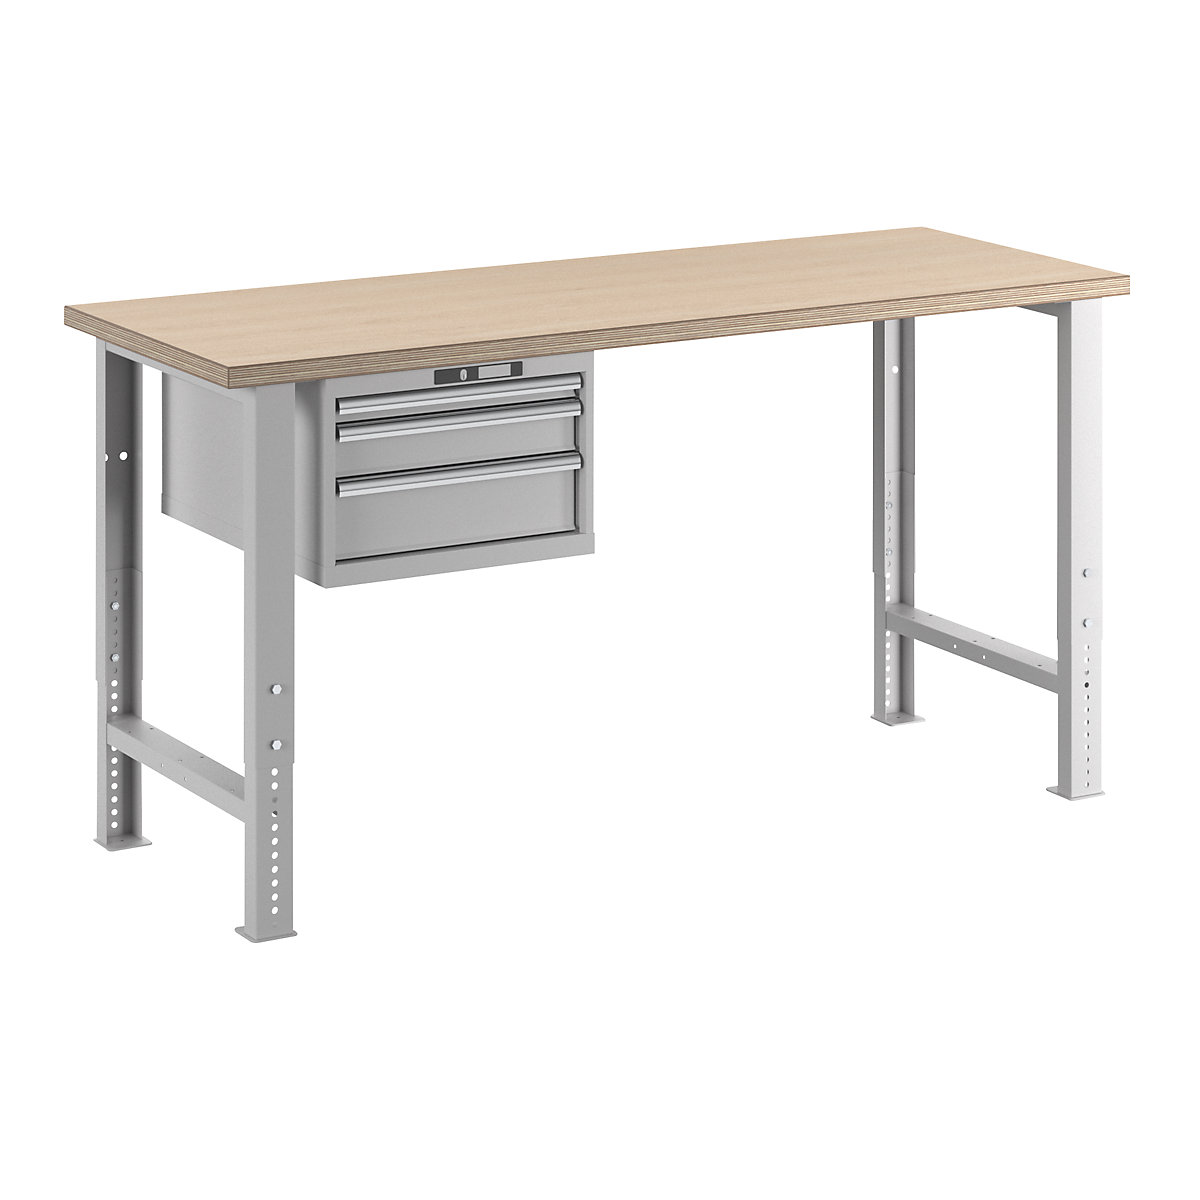 Stół warsztatowy w systemie modułowym – LISTA, wys. 740 – 1090 mm, szafka wisząca, 3 szuflady, jasnoszary, szer. stołu 2000 mm-15